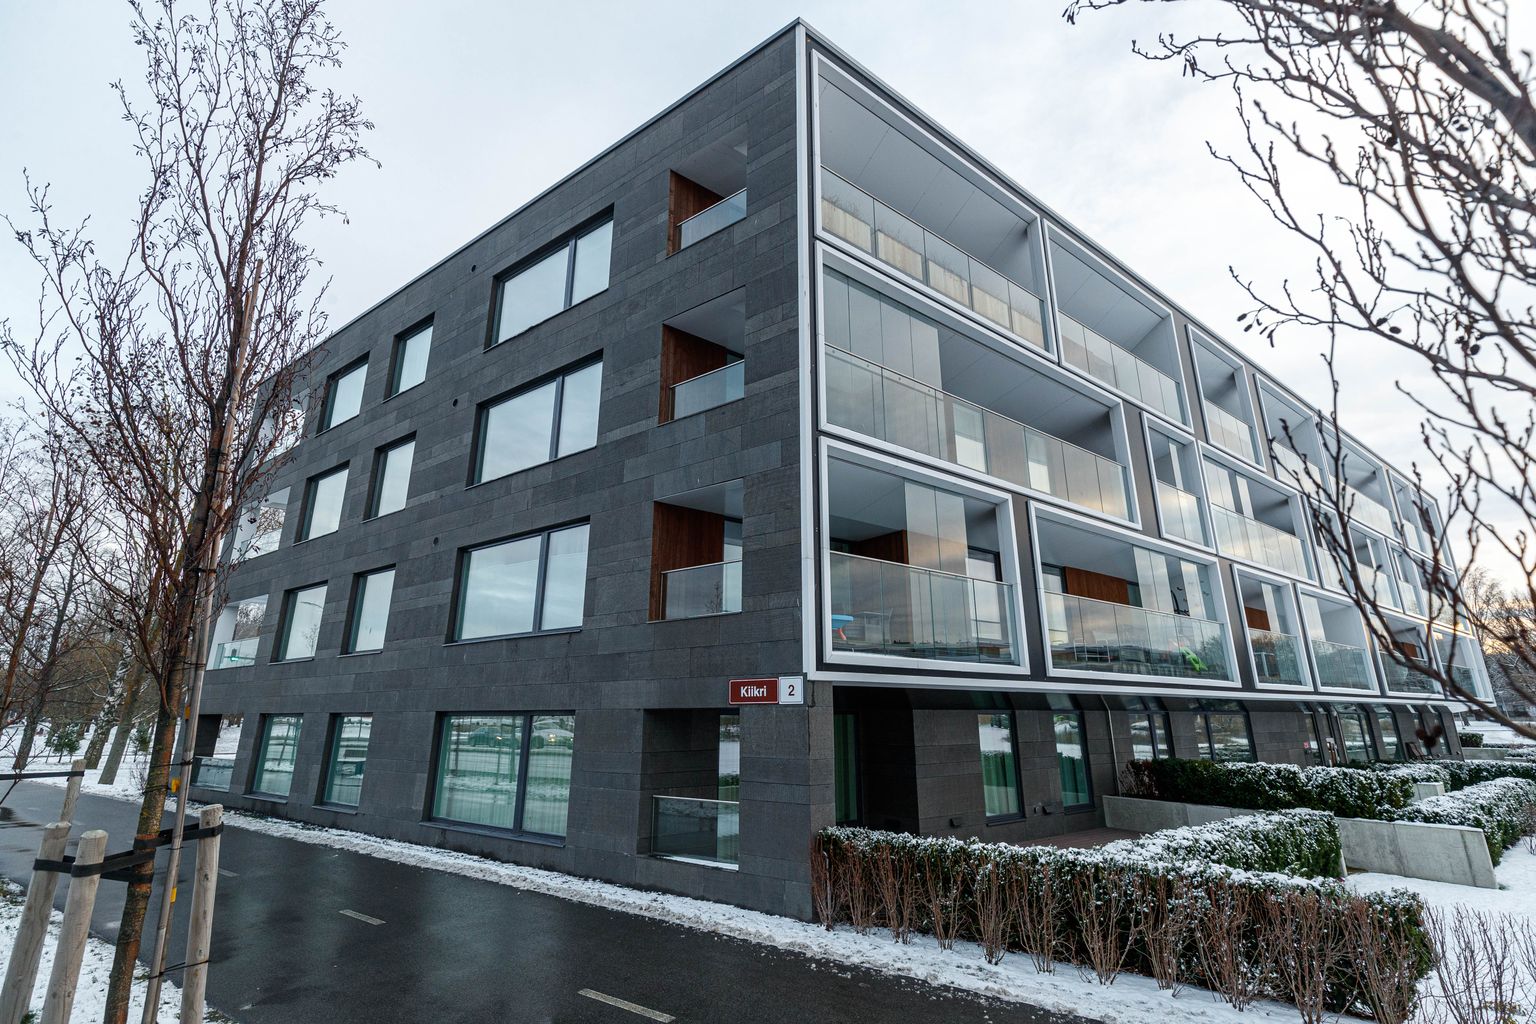 Tallinna korterid muutuvad inimestele järjest vähem taskukohaseks.